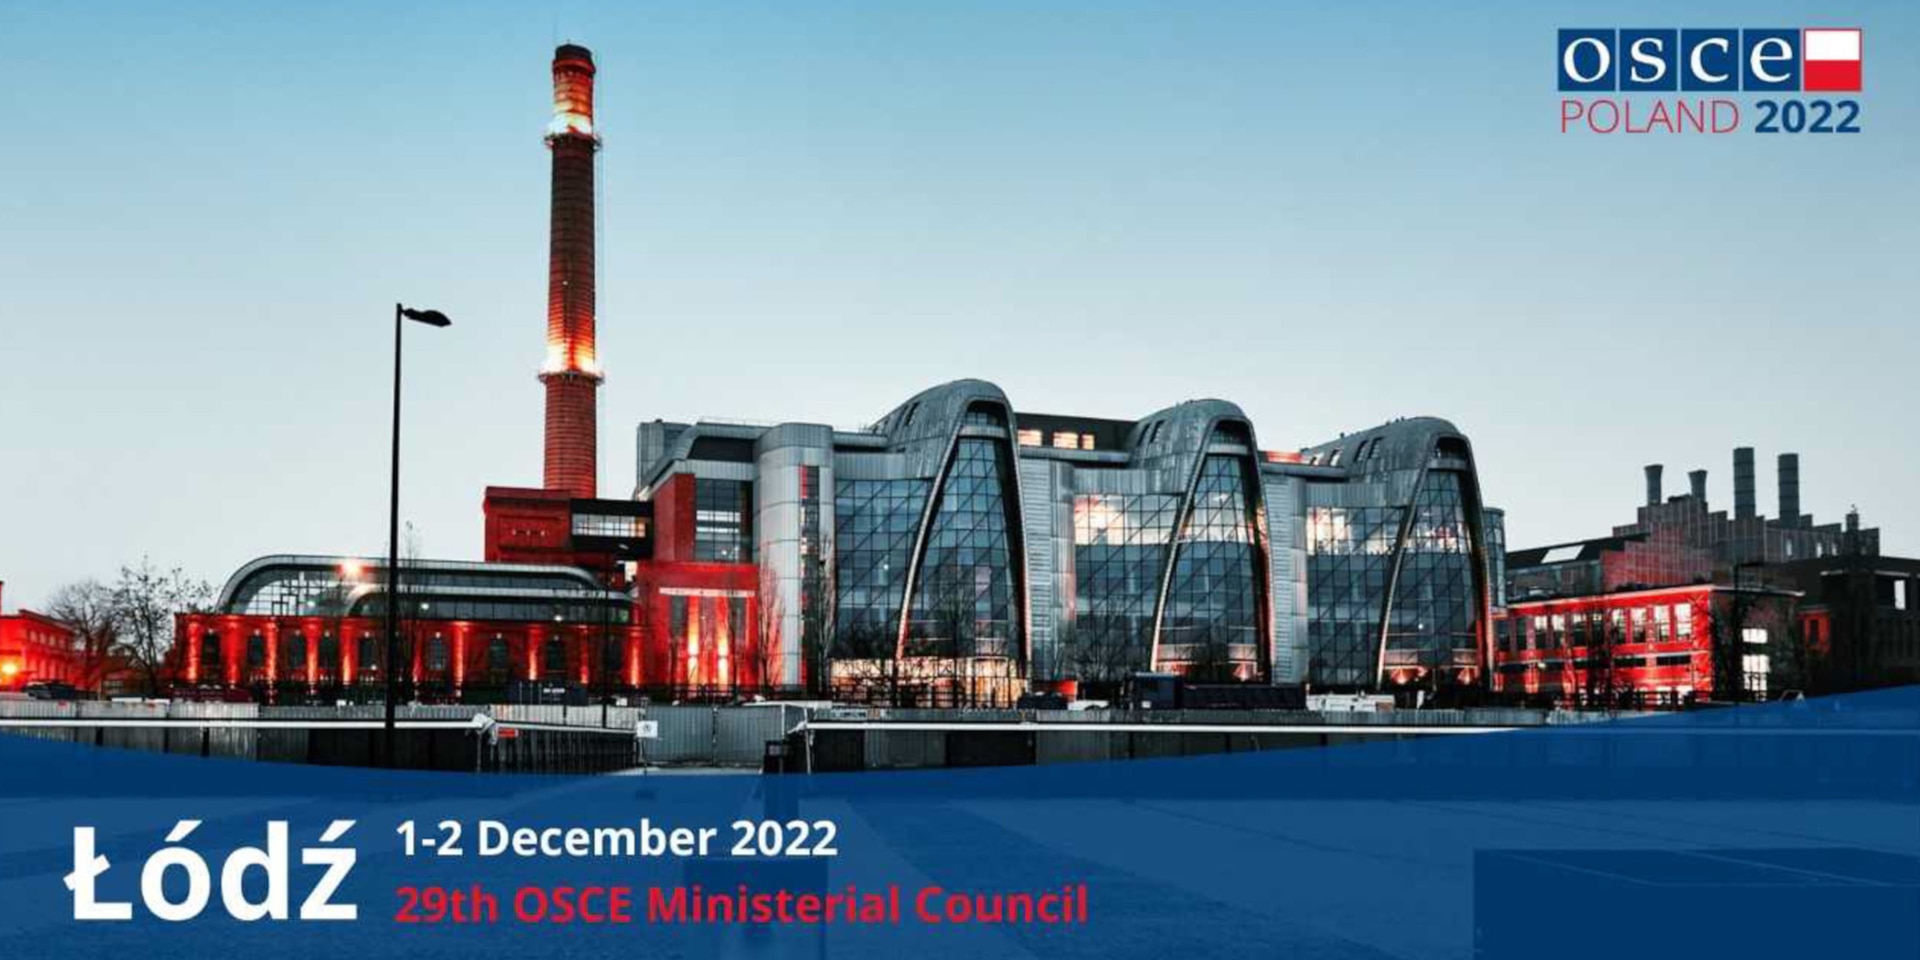 Un grande edificio industriale oggi utilizzato come sede di conferenze. In alto a destra il logo della Presidenza OSCE della Polonia nel 2022.